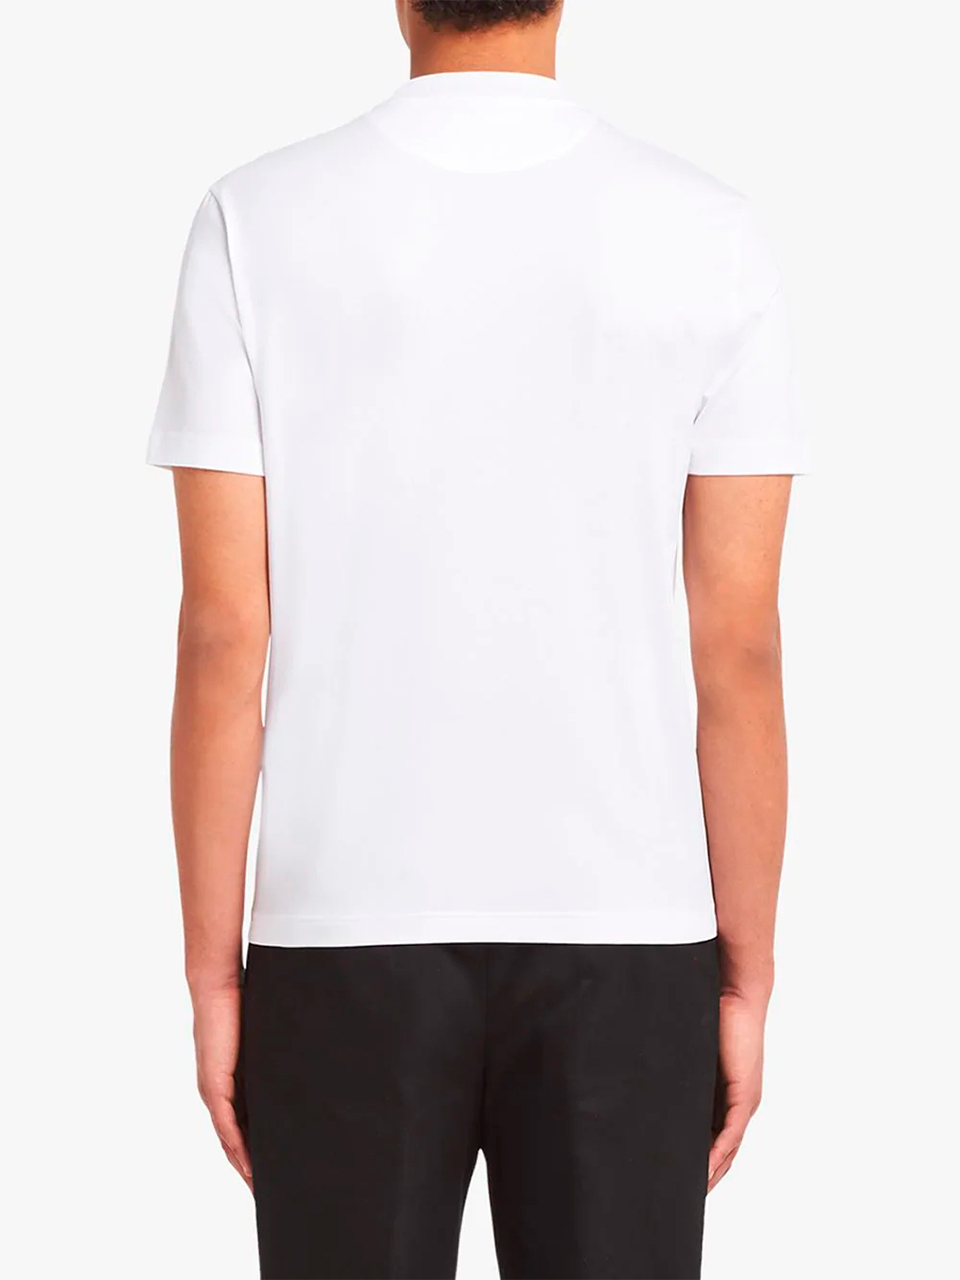 Imagem de: Camiseta Prada Branca com Logo